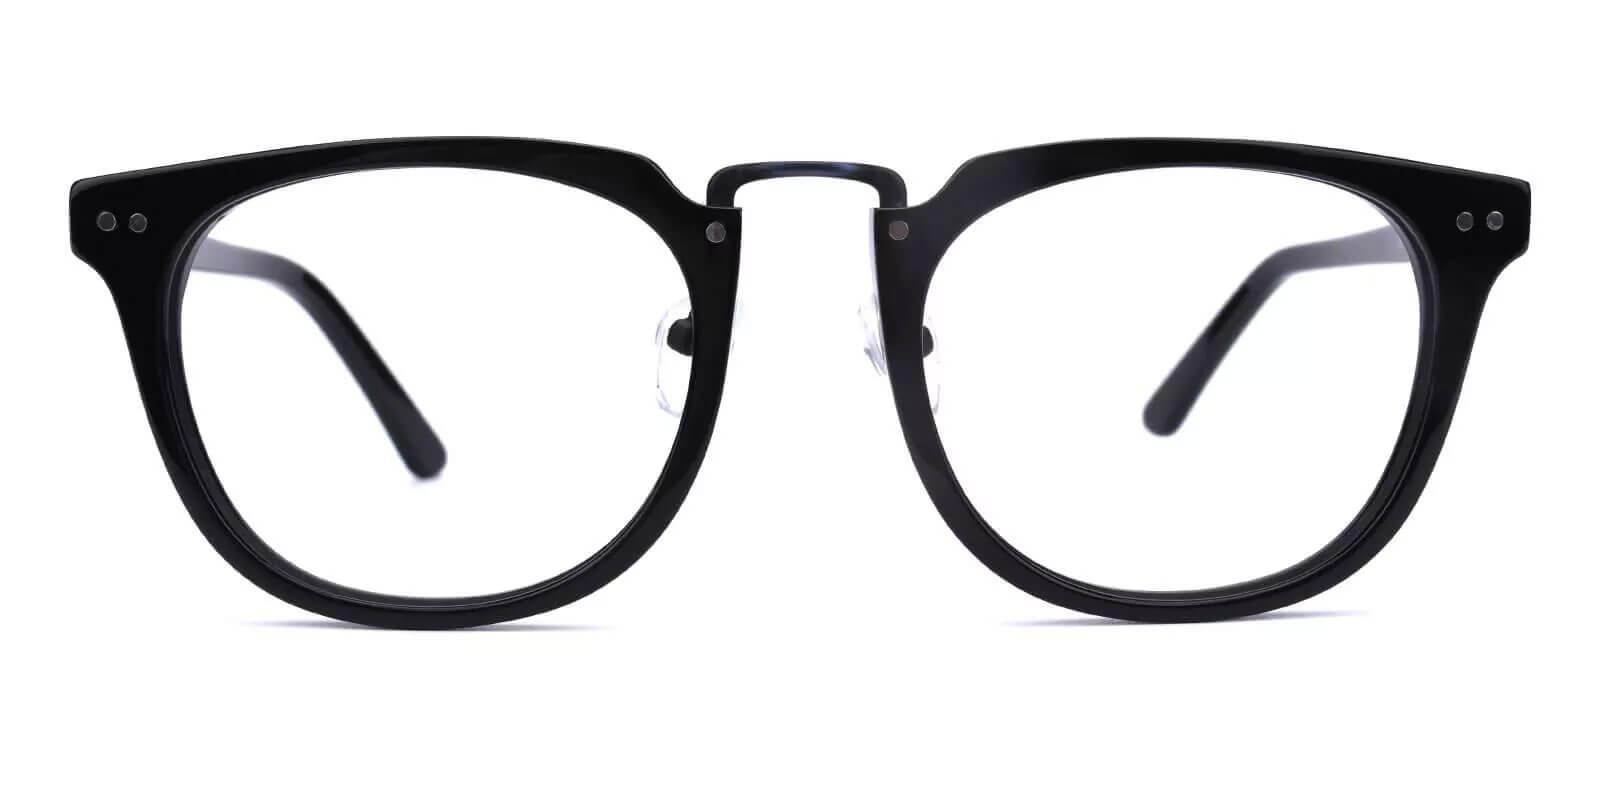 Latrobe Black Acetate Eyeglasses , NosePads Frames from ABBE Glasses